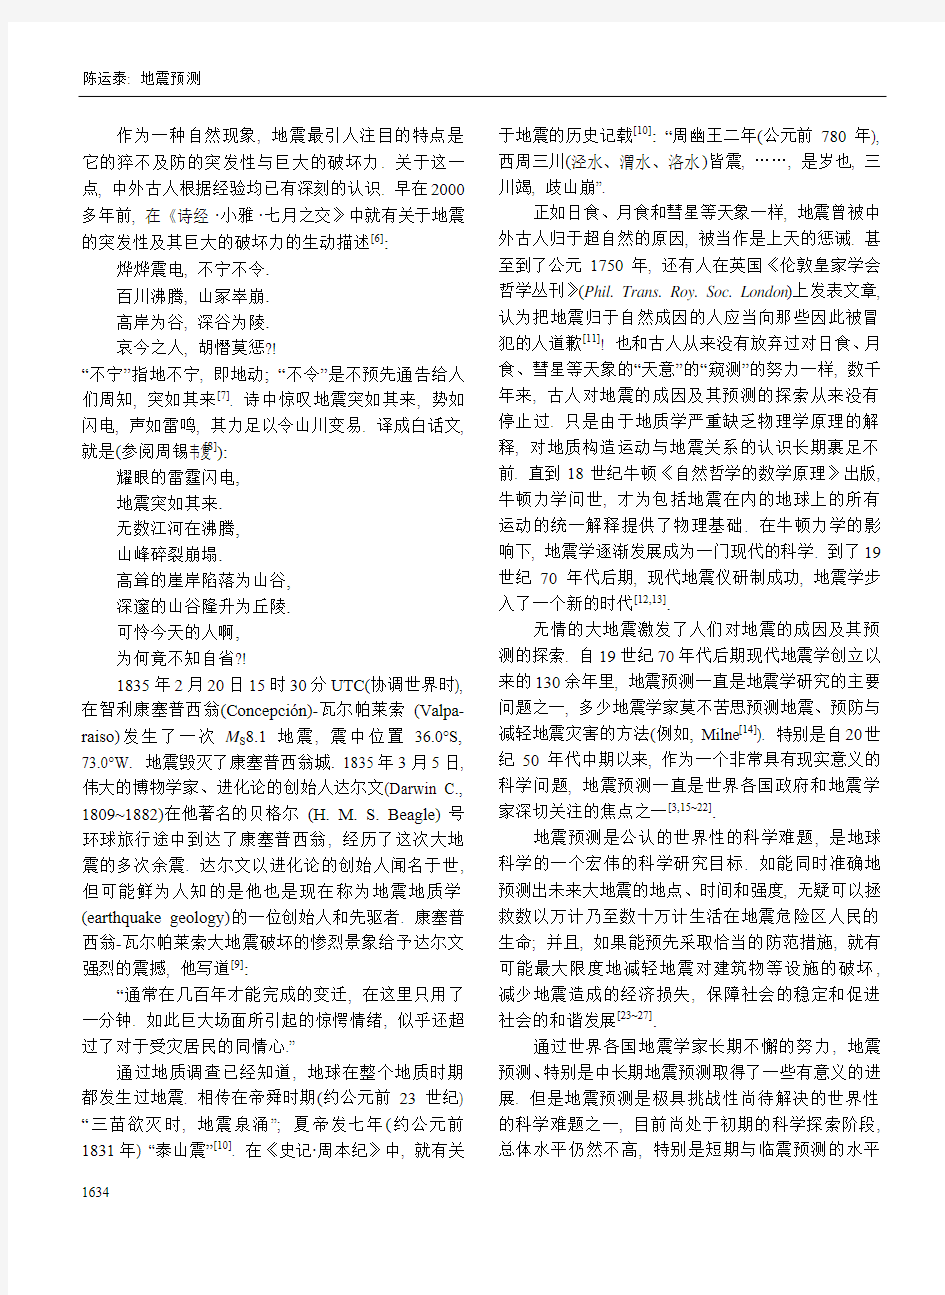 地震预测：回顾与展望(刊载于中国科学(2009)